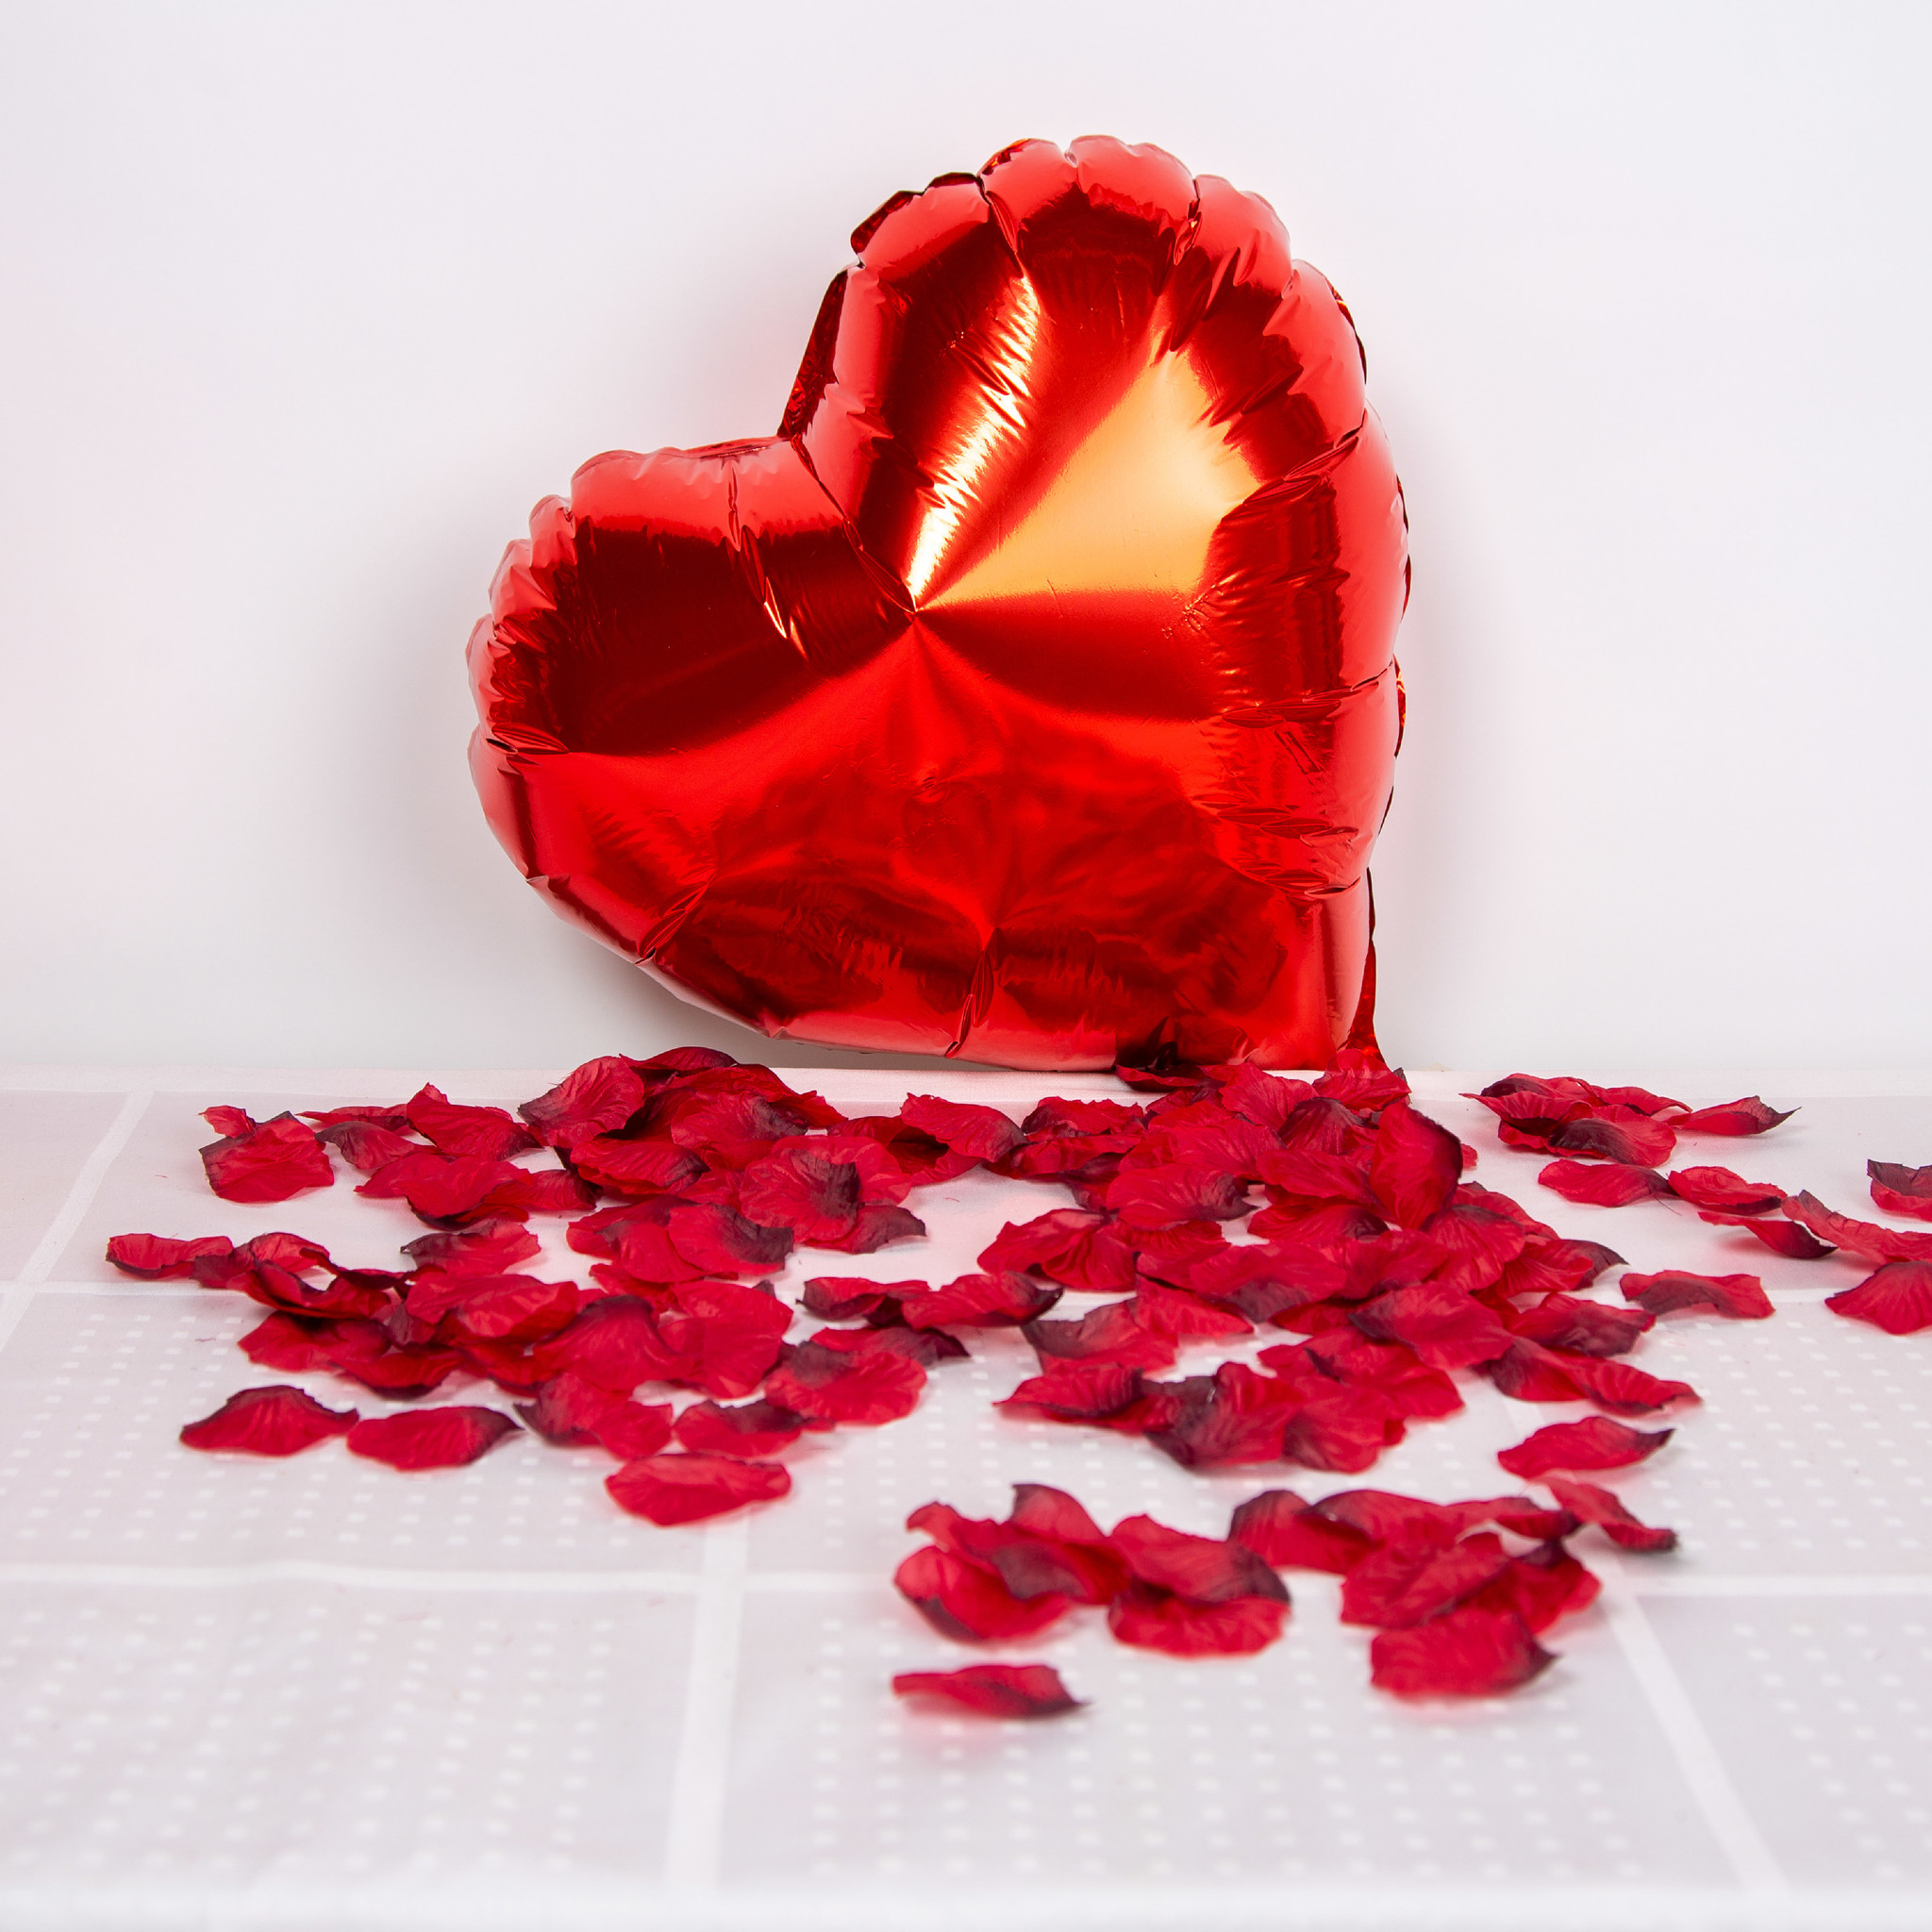 zoete smaak Hijsen Altaar Fissaly® 2000 Stuks Rode Rozenblaadjes met Hartjes Ballonnen – Romantische  Liefde Versiering – Liefdes Cadeau Decoratie – Love - Rood - Fissaly